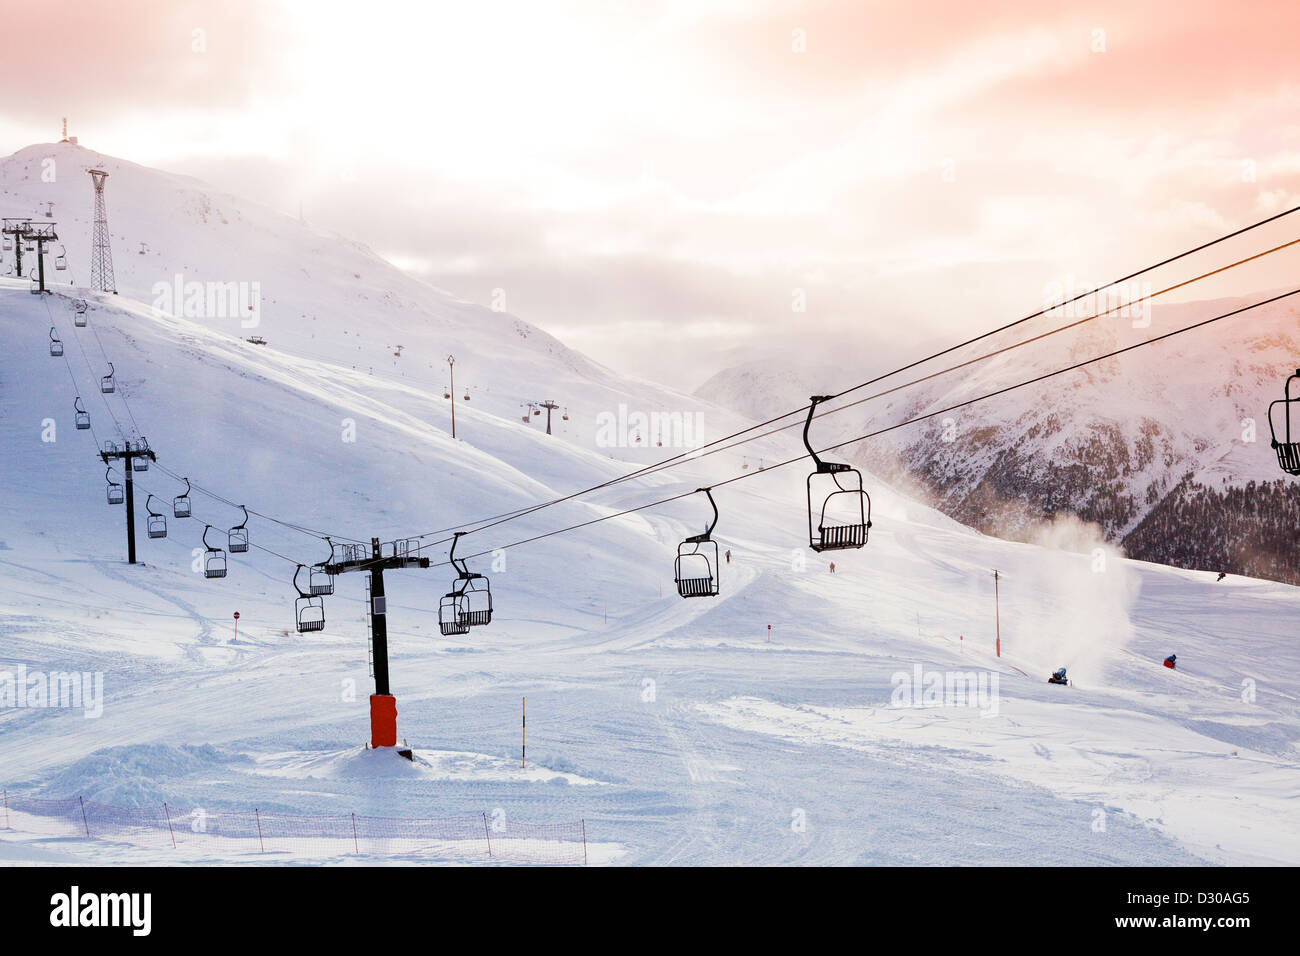 Panorama des montagnes d'hiver avec des pistes de ski et des remontées mécaniques sur un jour nuageux Banque D'Images